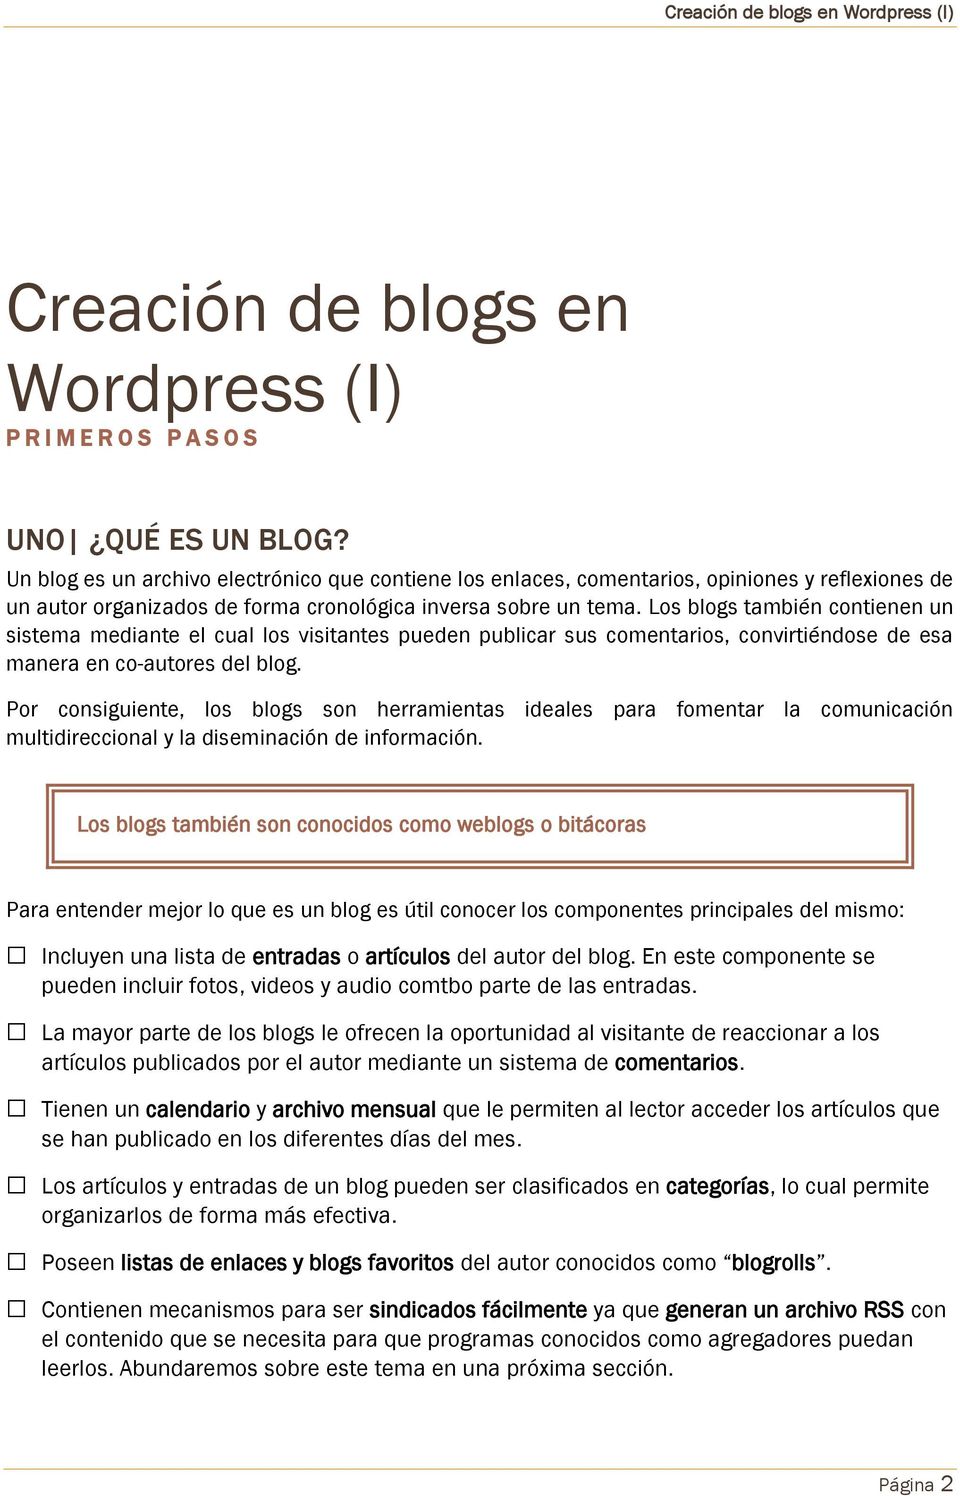 Los blogs también contienen un sistema mediante el cual los visitantes pueden publicar sus comentarios, convirtiéndose de esa manera en co-autores del blog.